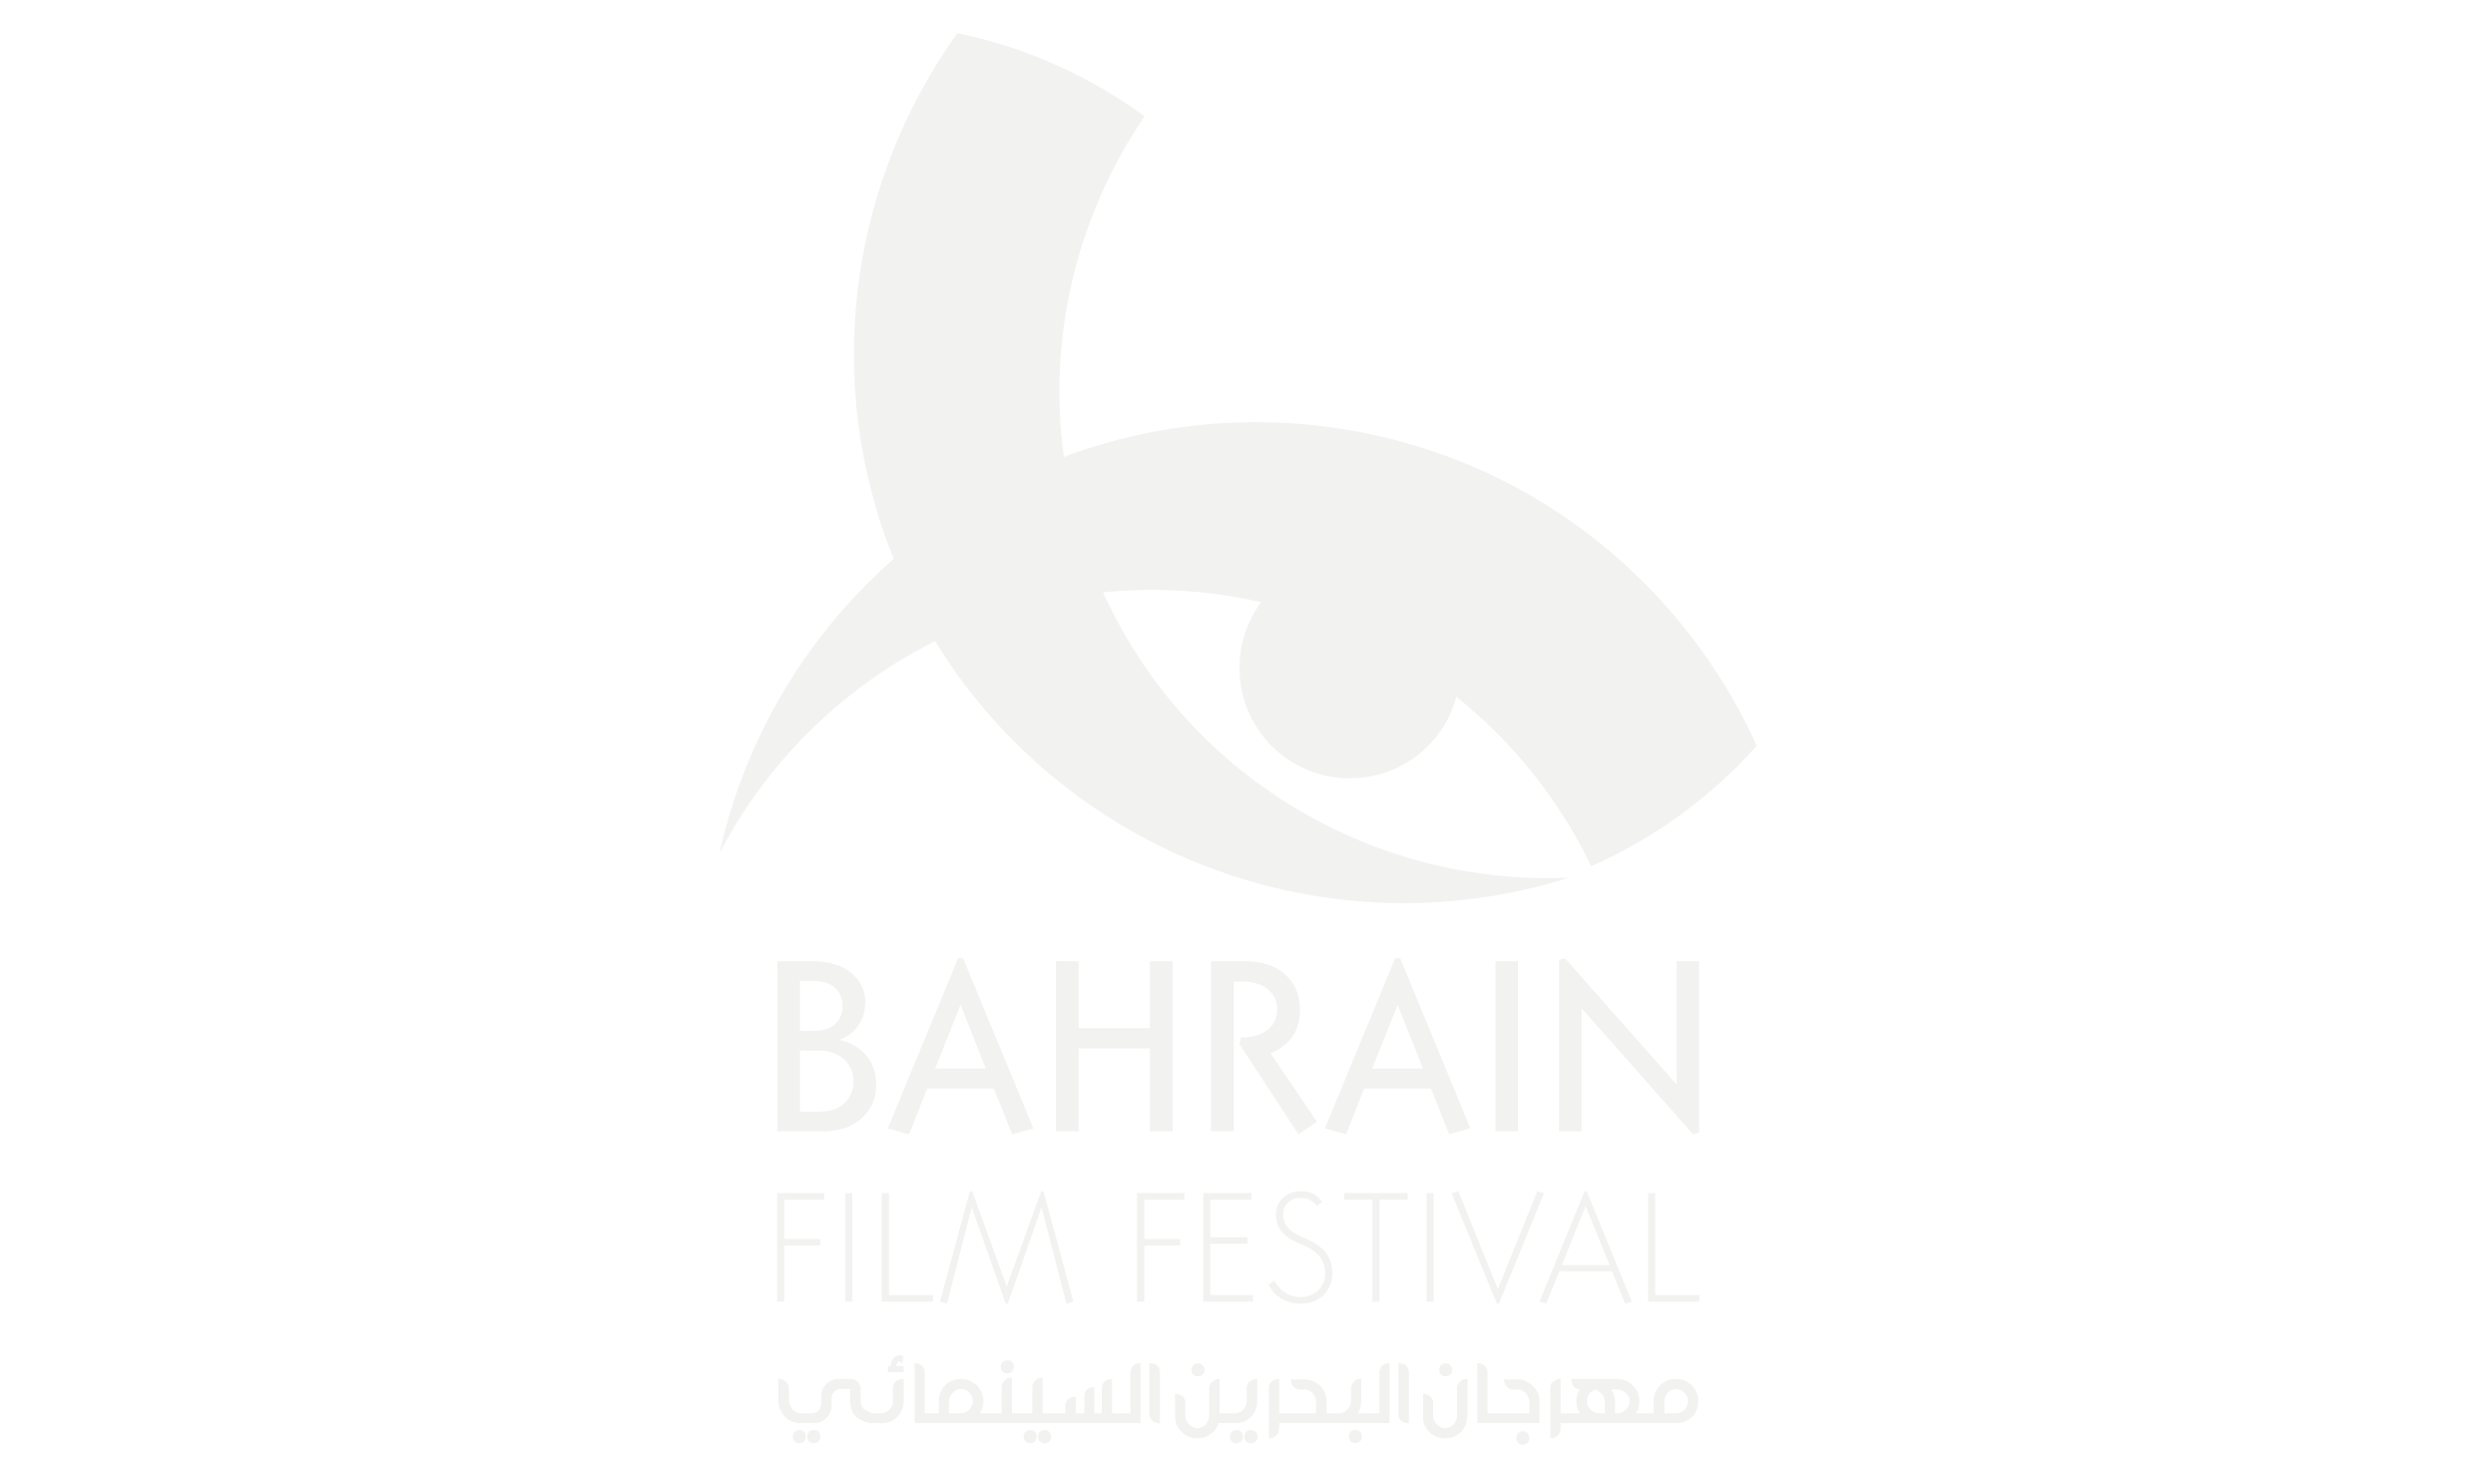 Bahrain International Film Festival